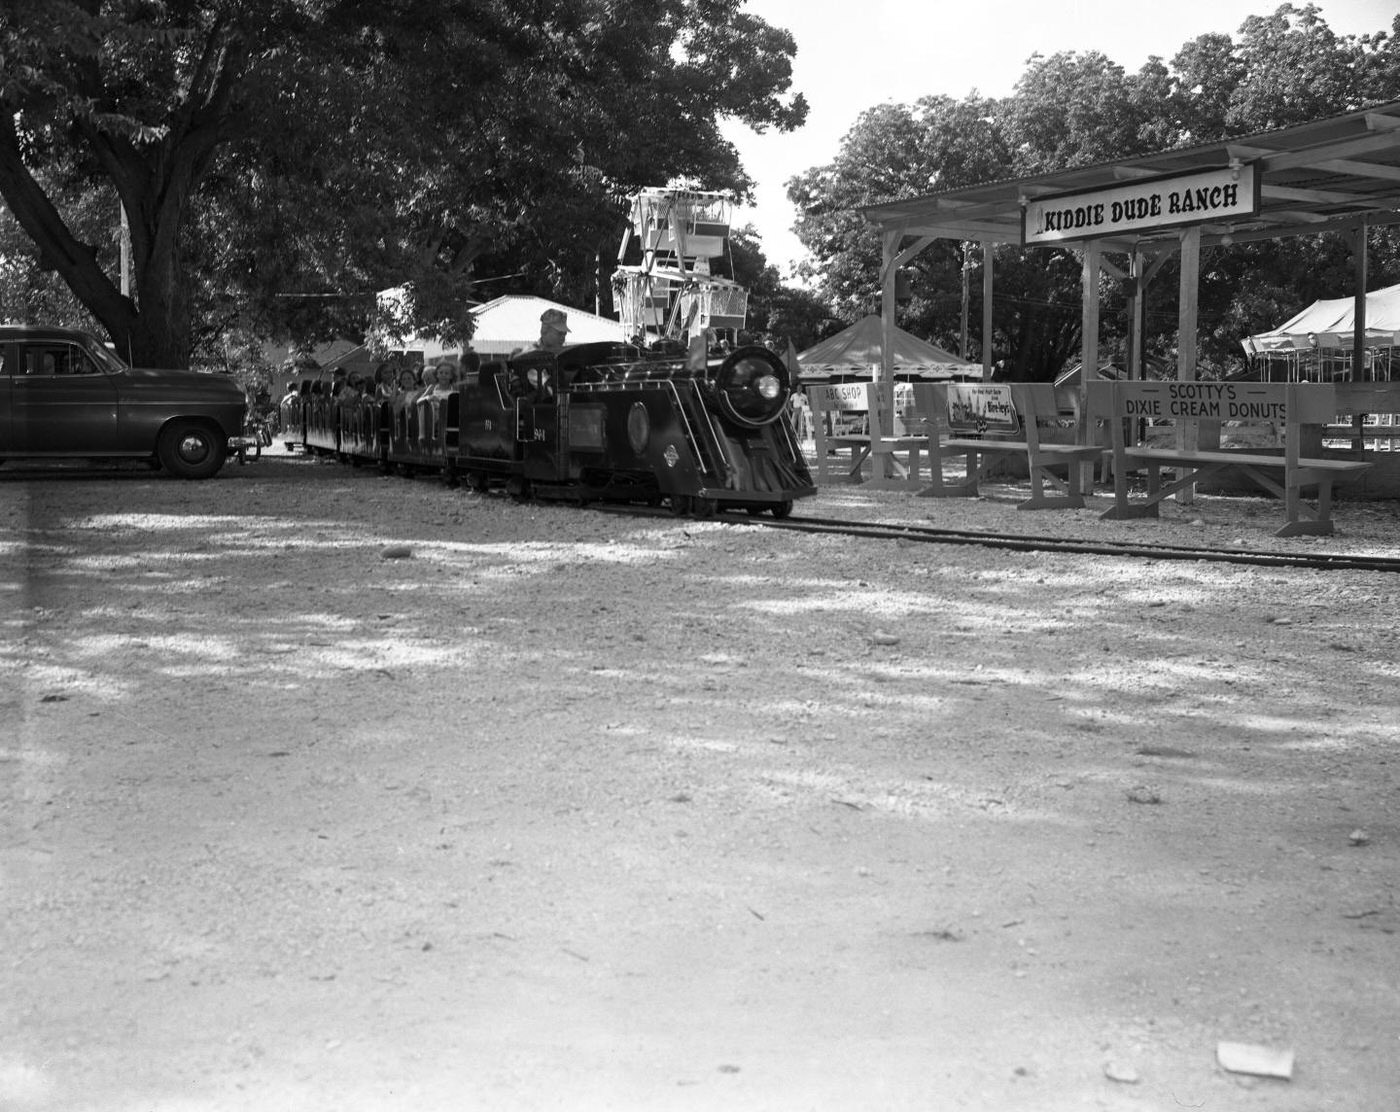 Kiddieland Park Featuring Kiddie Dude Ranch and Train, Austin, 1950.